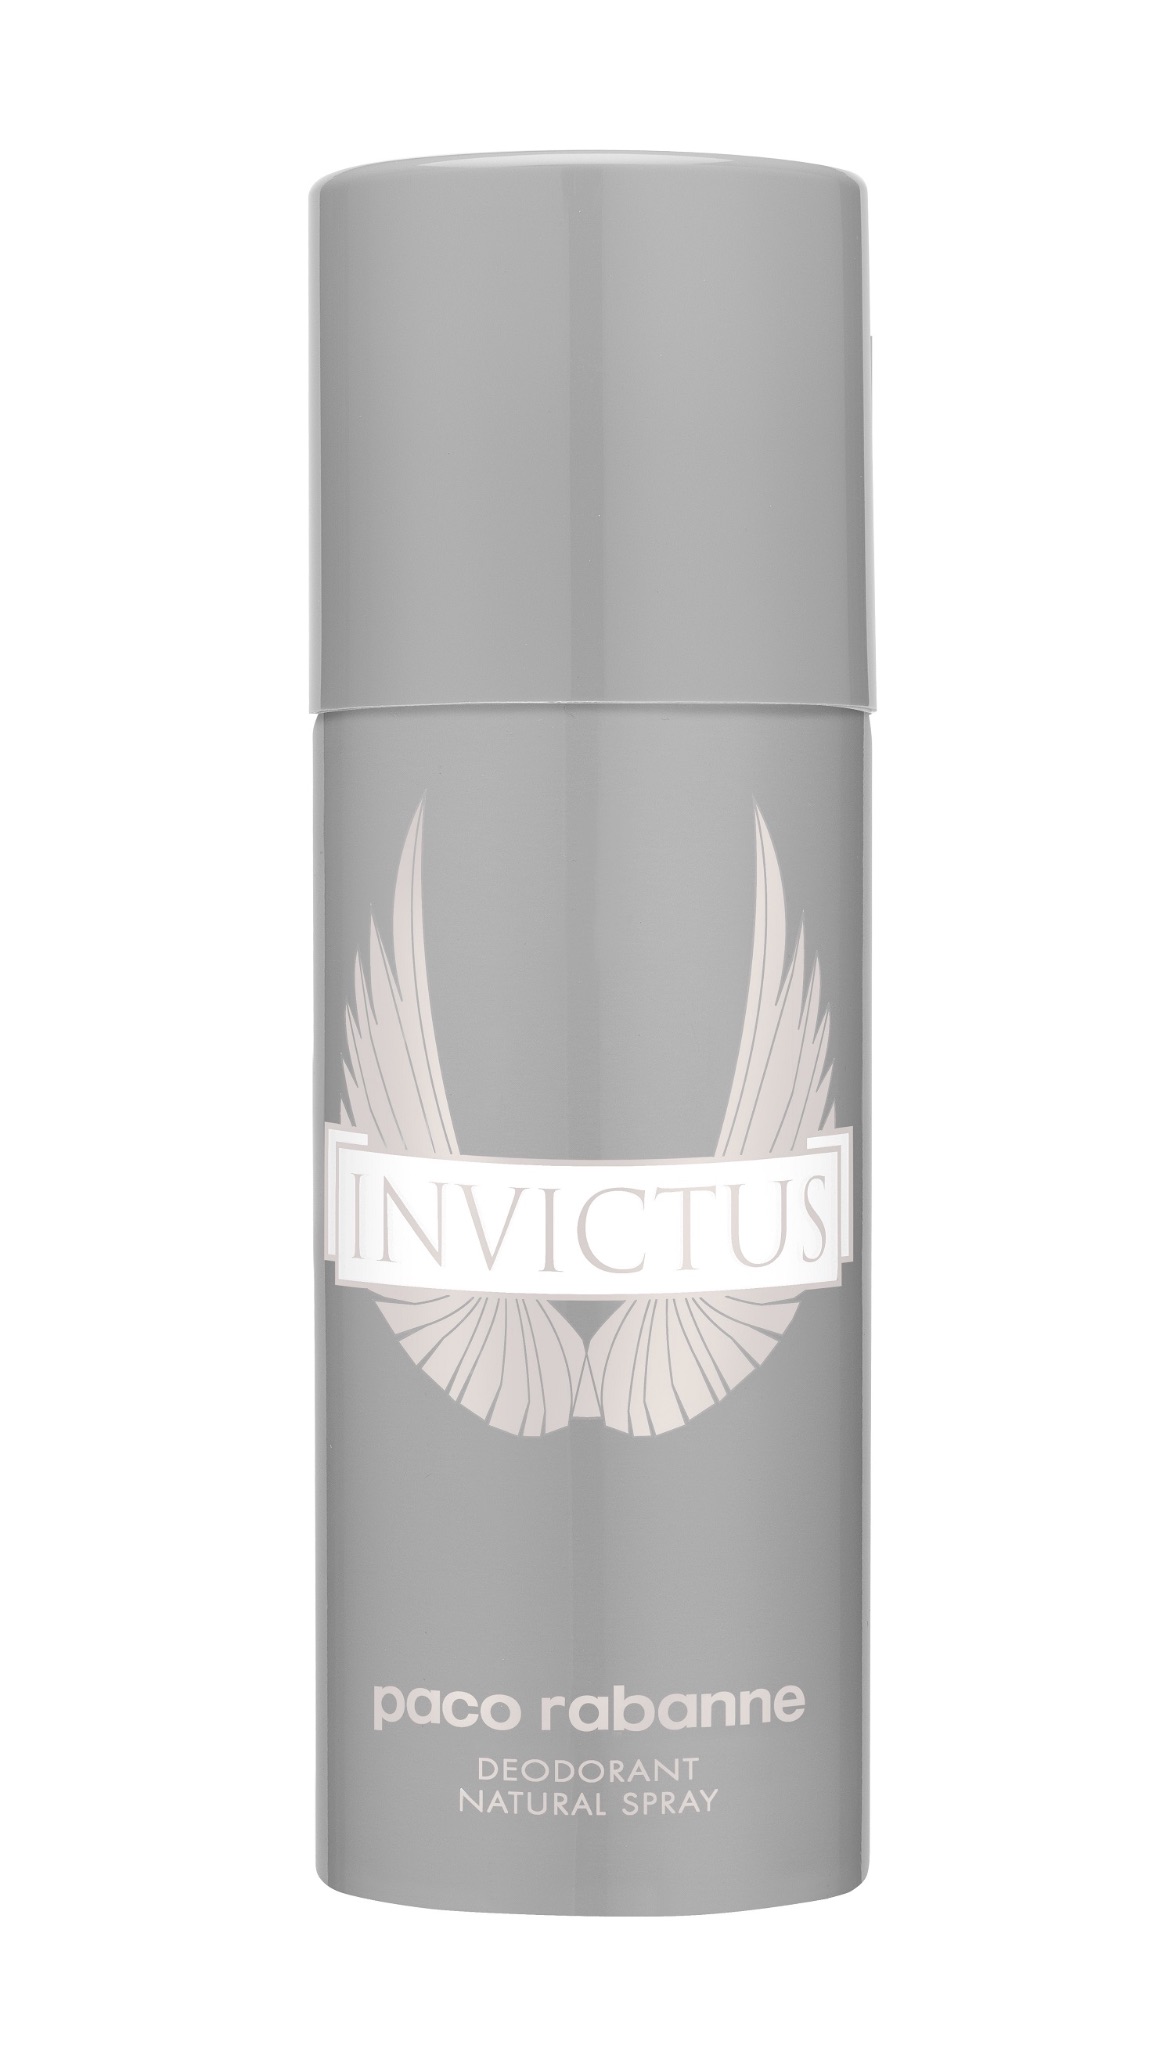 Paco Rabanne Invictus Deodorant Spray 150ml - thefragrancecounter.co.uk